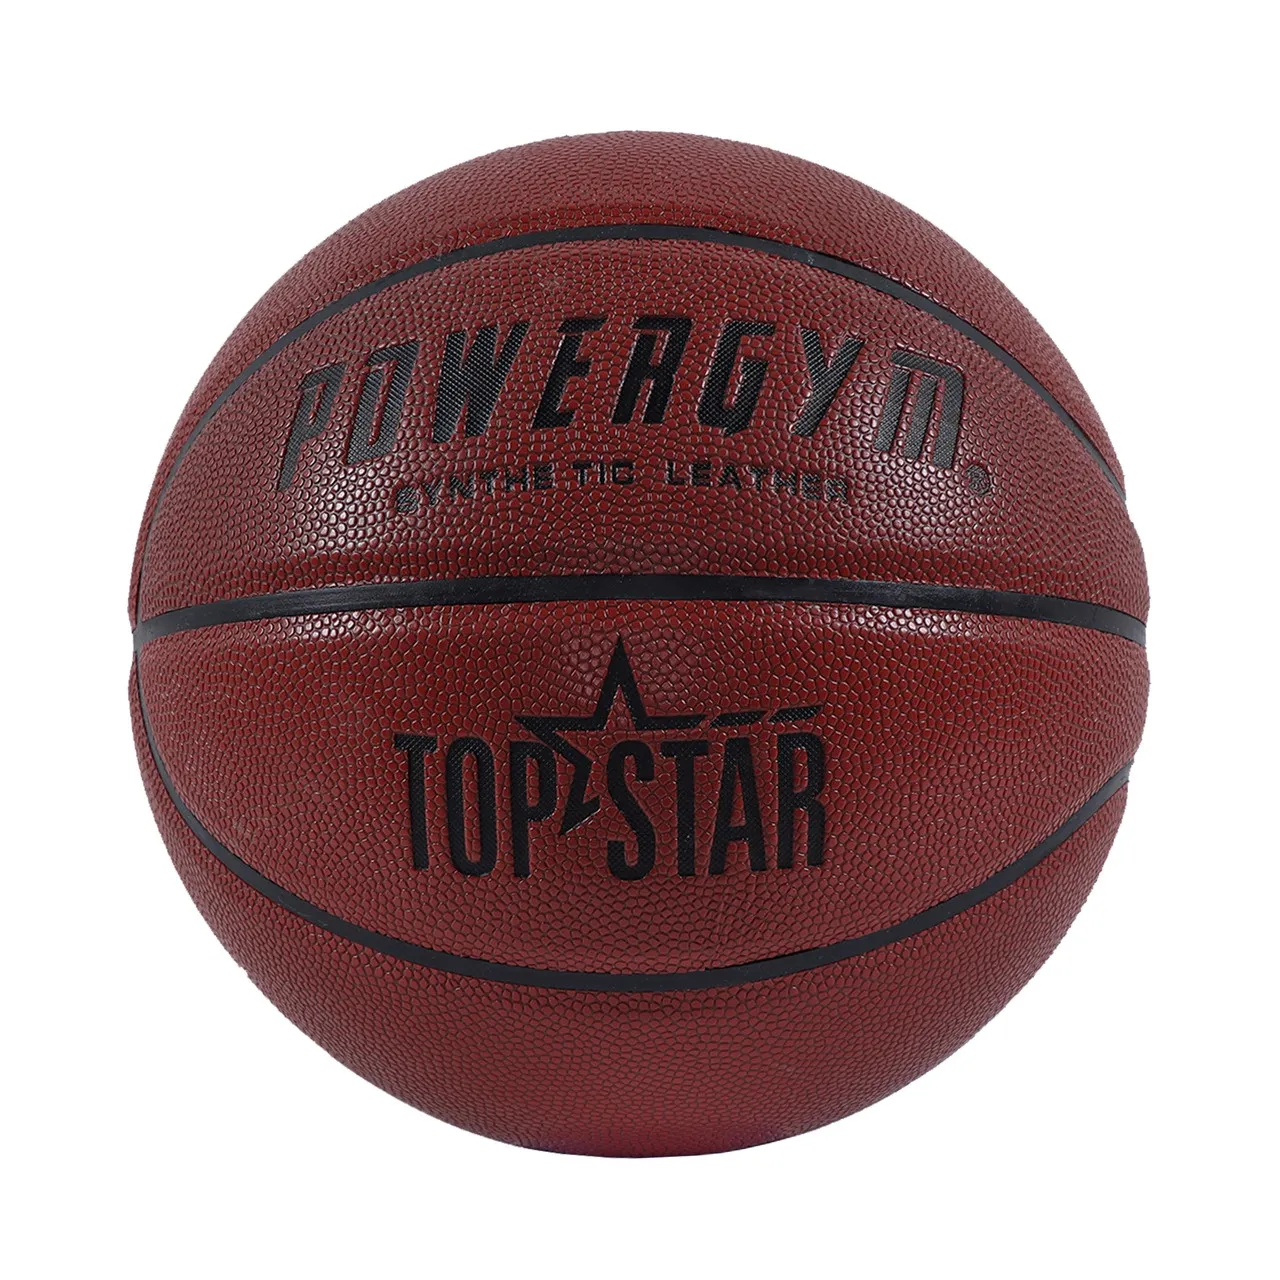 Баскетбольный мяч PowerGym Topstar#1